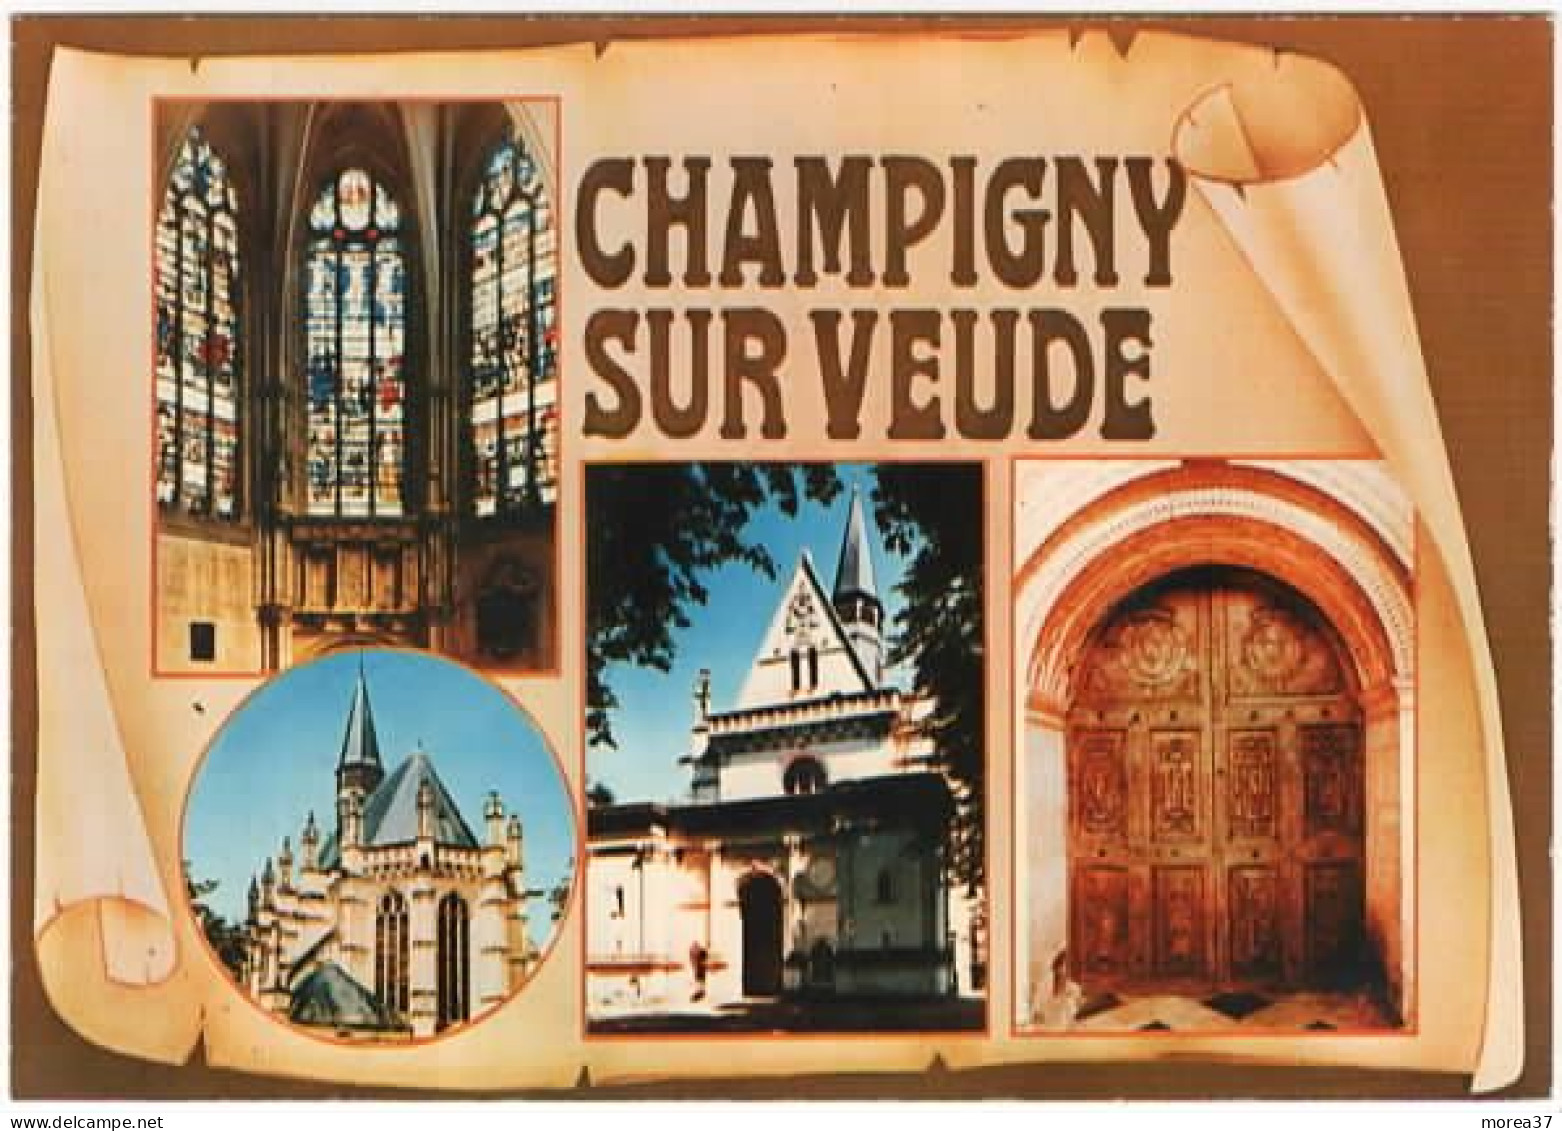 CHAMPIGNY SUR VEUDE La Chapelle Saint Louis   Vitraux Renaissance - Champigny-sur-Veude